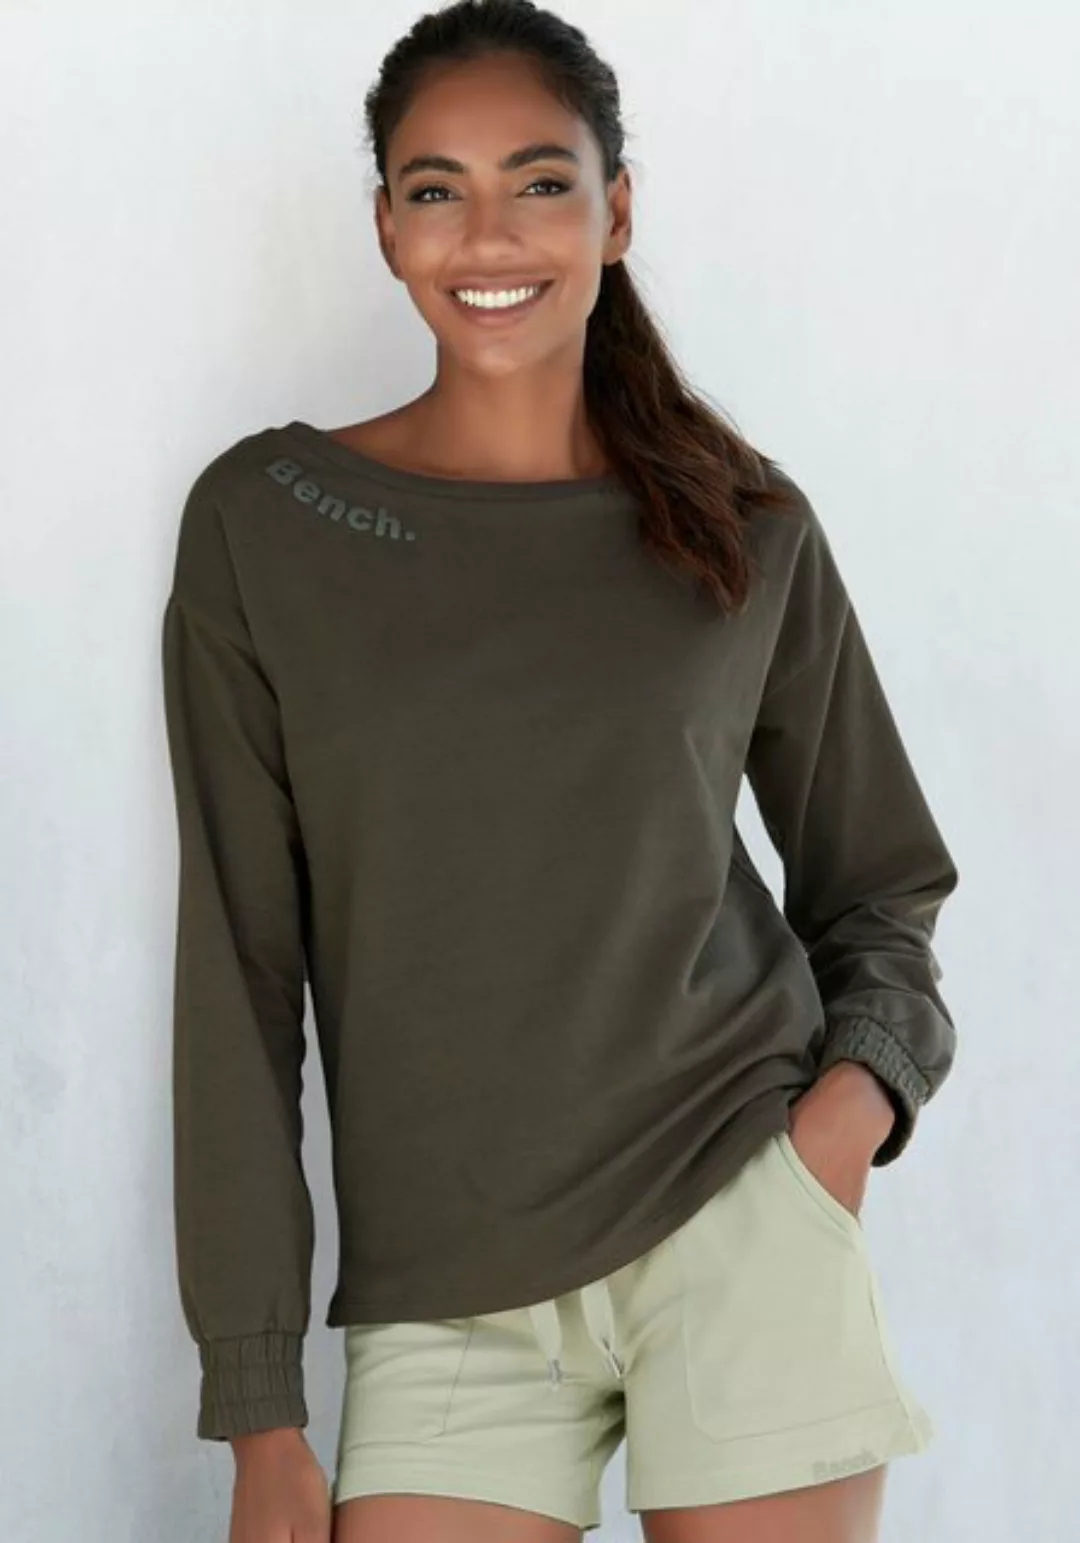 Bench. Loungewear Sweatshirt mit gerafften Ärmelbündchen, Loungeanzug günstig online kaufen